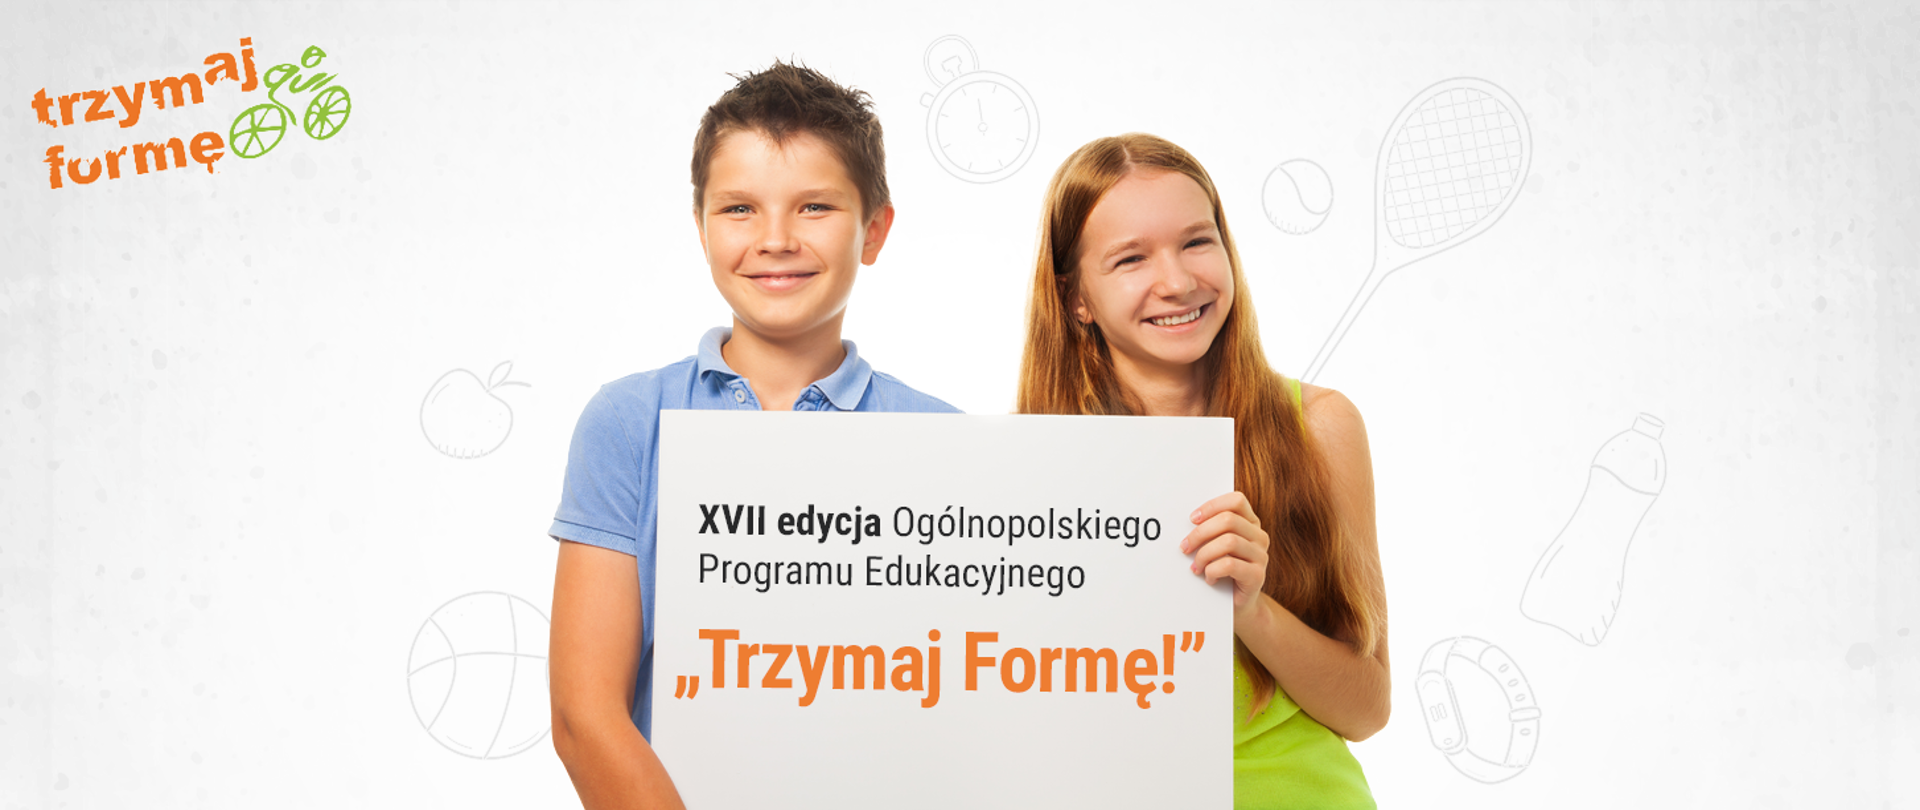 Chłopiec i dziewczynka trzymający kartkę z napisem "XVII edycja Ogólnopolskiego Programu Edukacyjnego "Trzymaj Formę!"